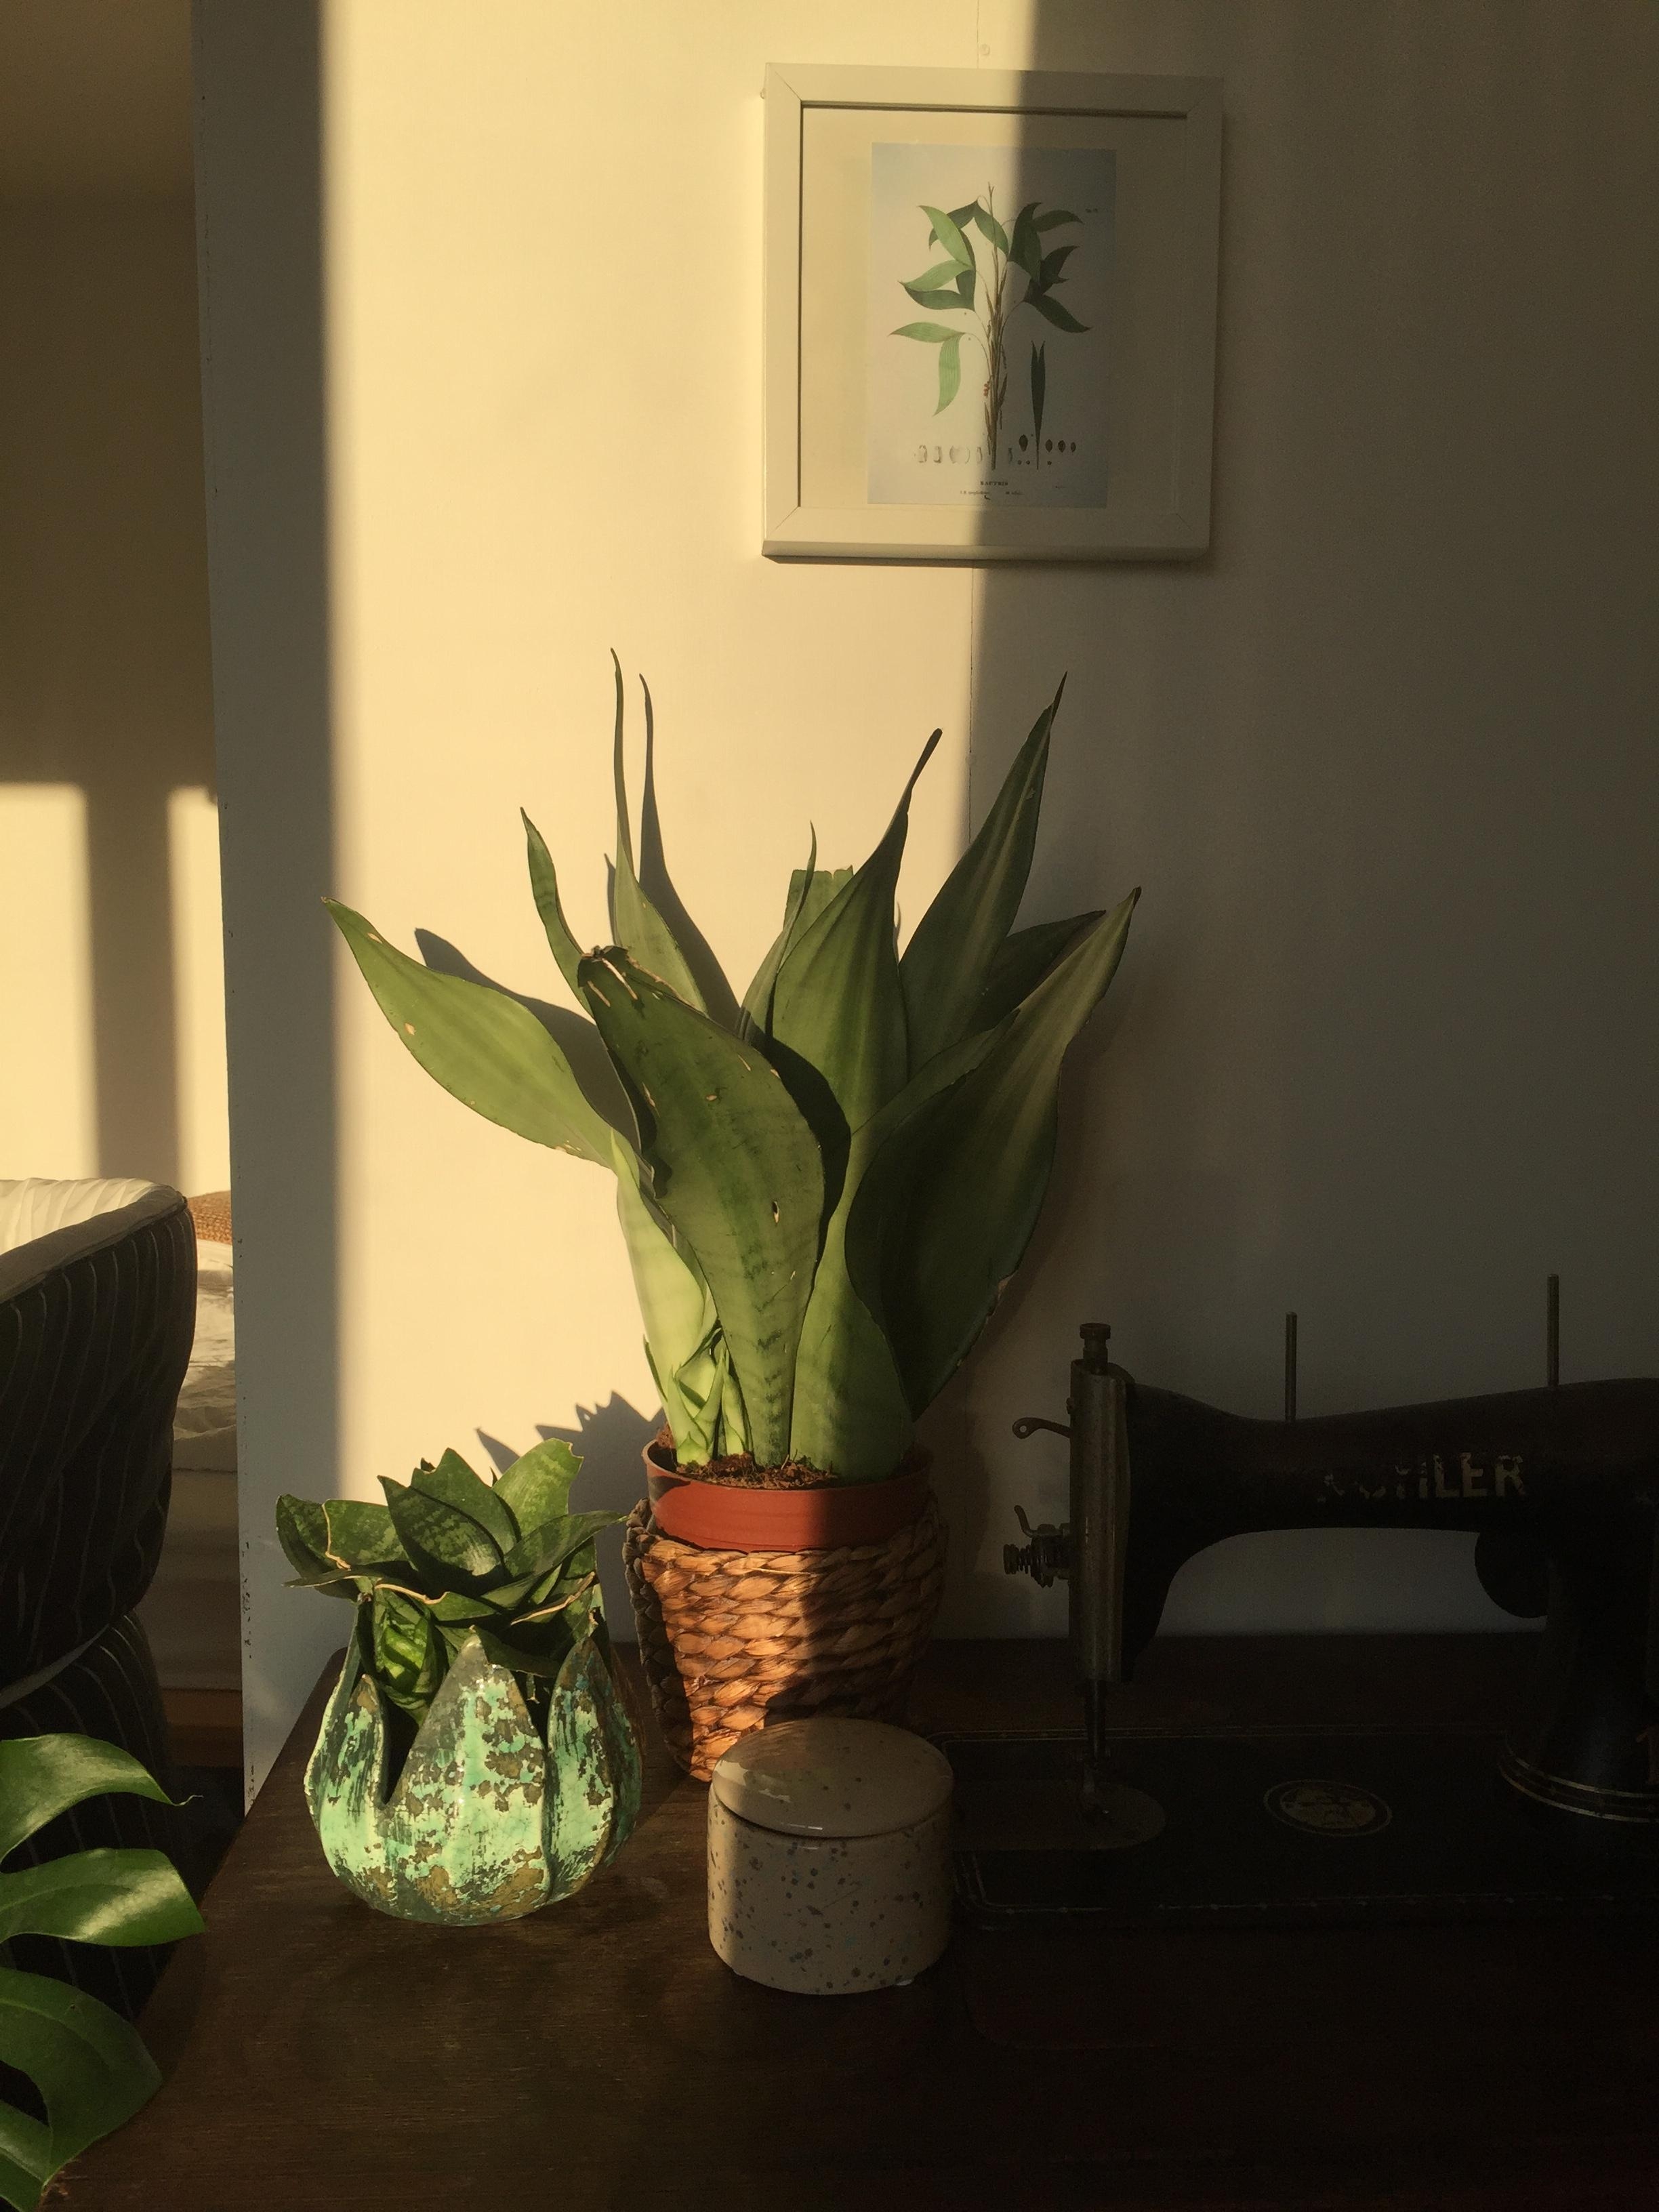 Wenn mal die Sonne rauskommt ☀️
#sun #deco #plants #livingroom 